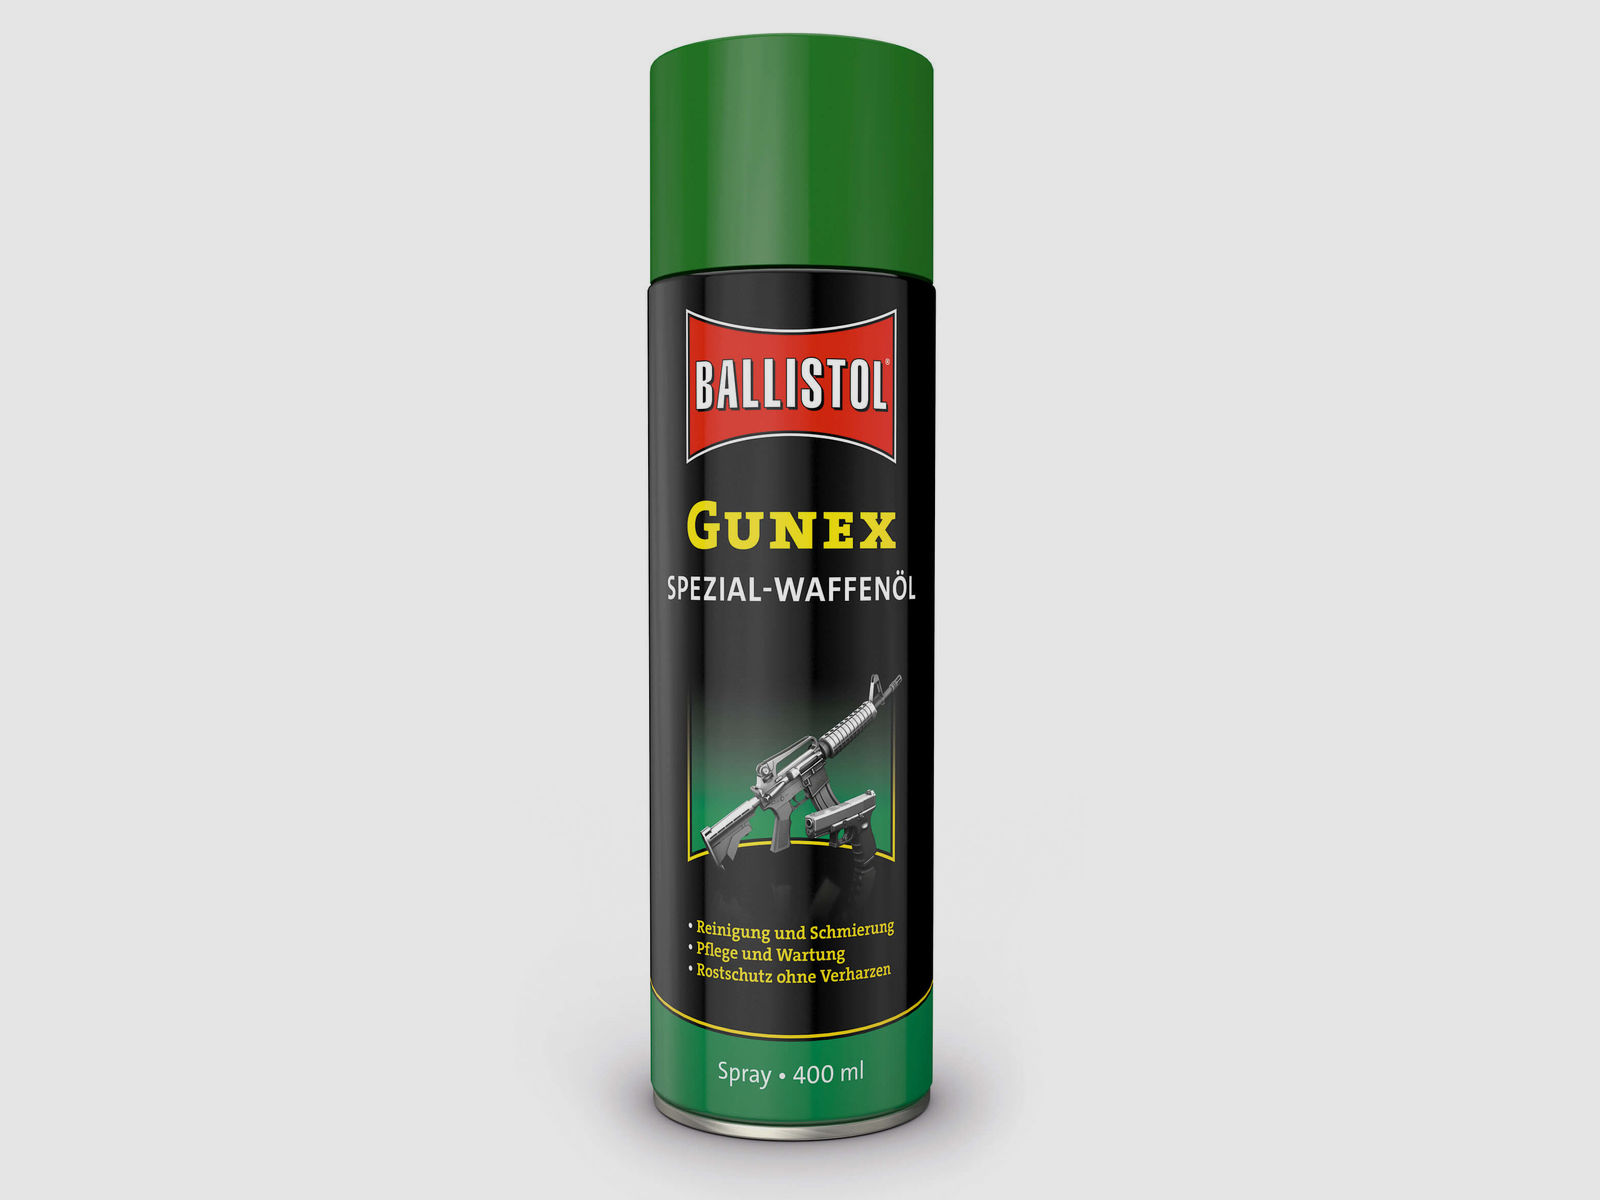 Ballistol Gunex Spezial-Waffenöl - 400ml Spray